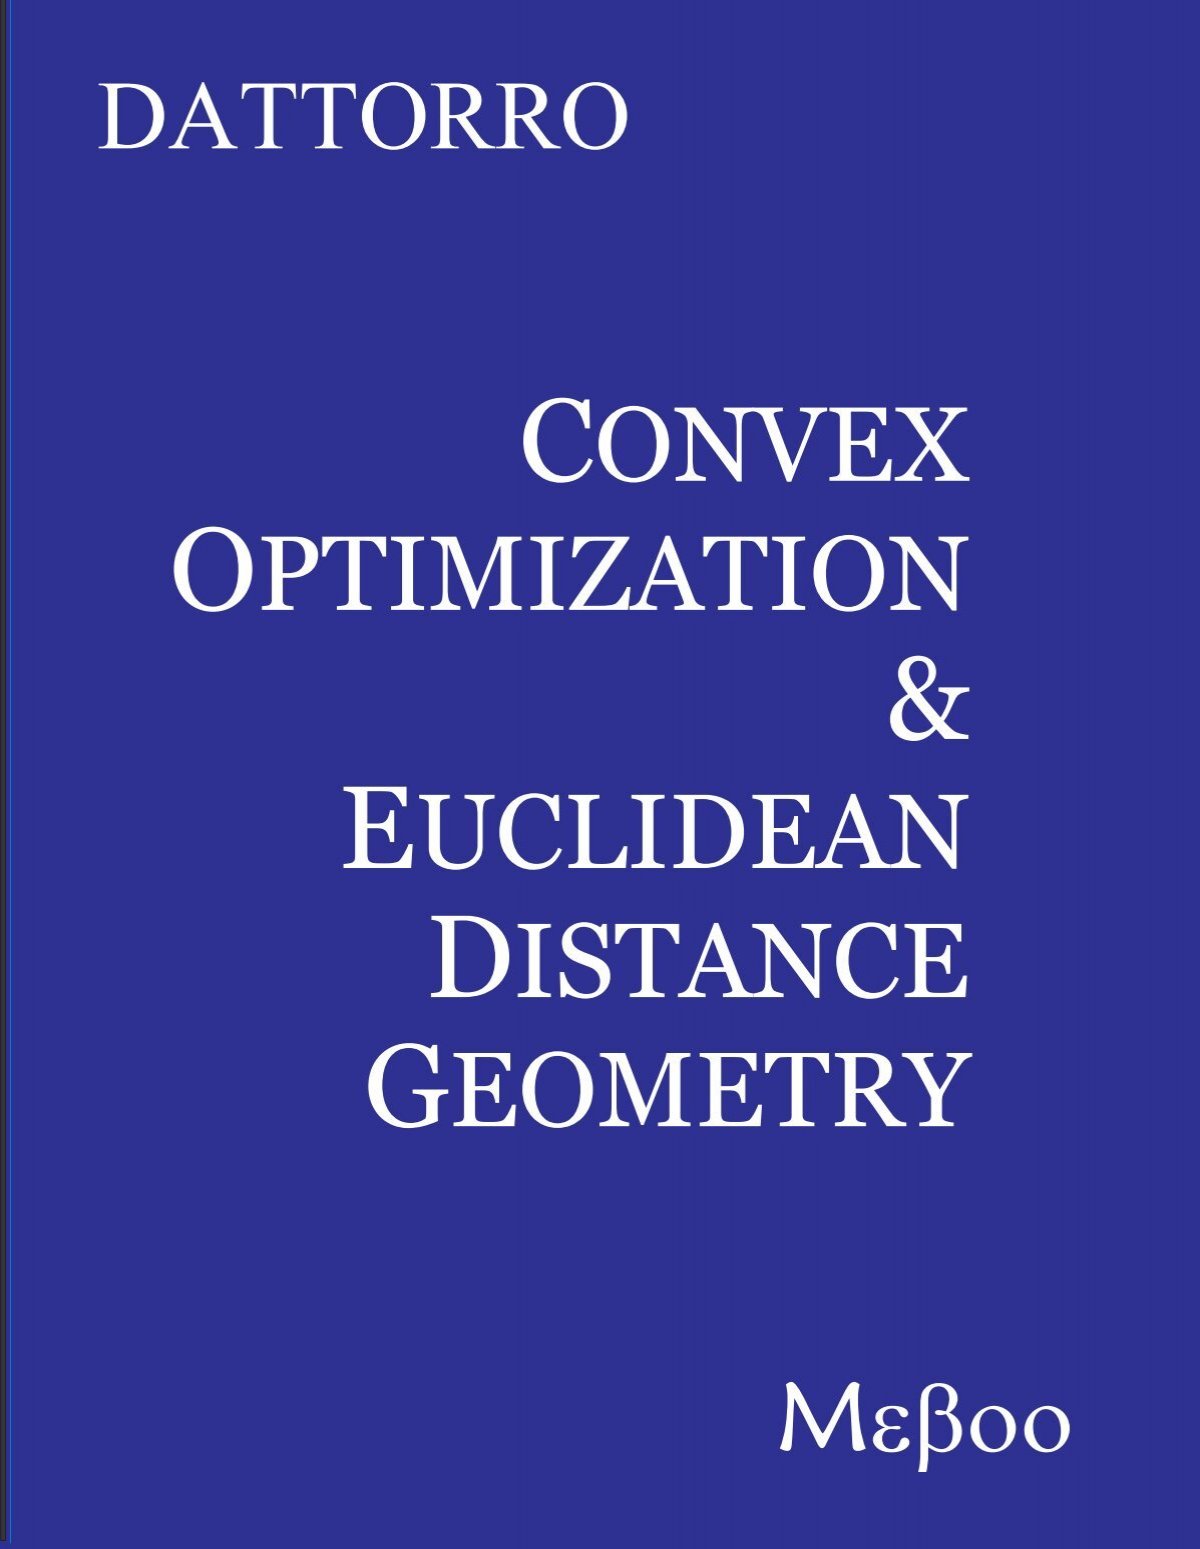 v2008.04.24 - Convex Optimization